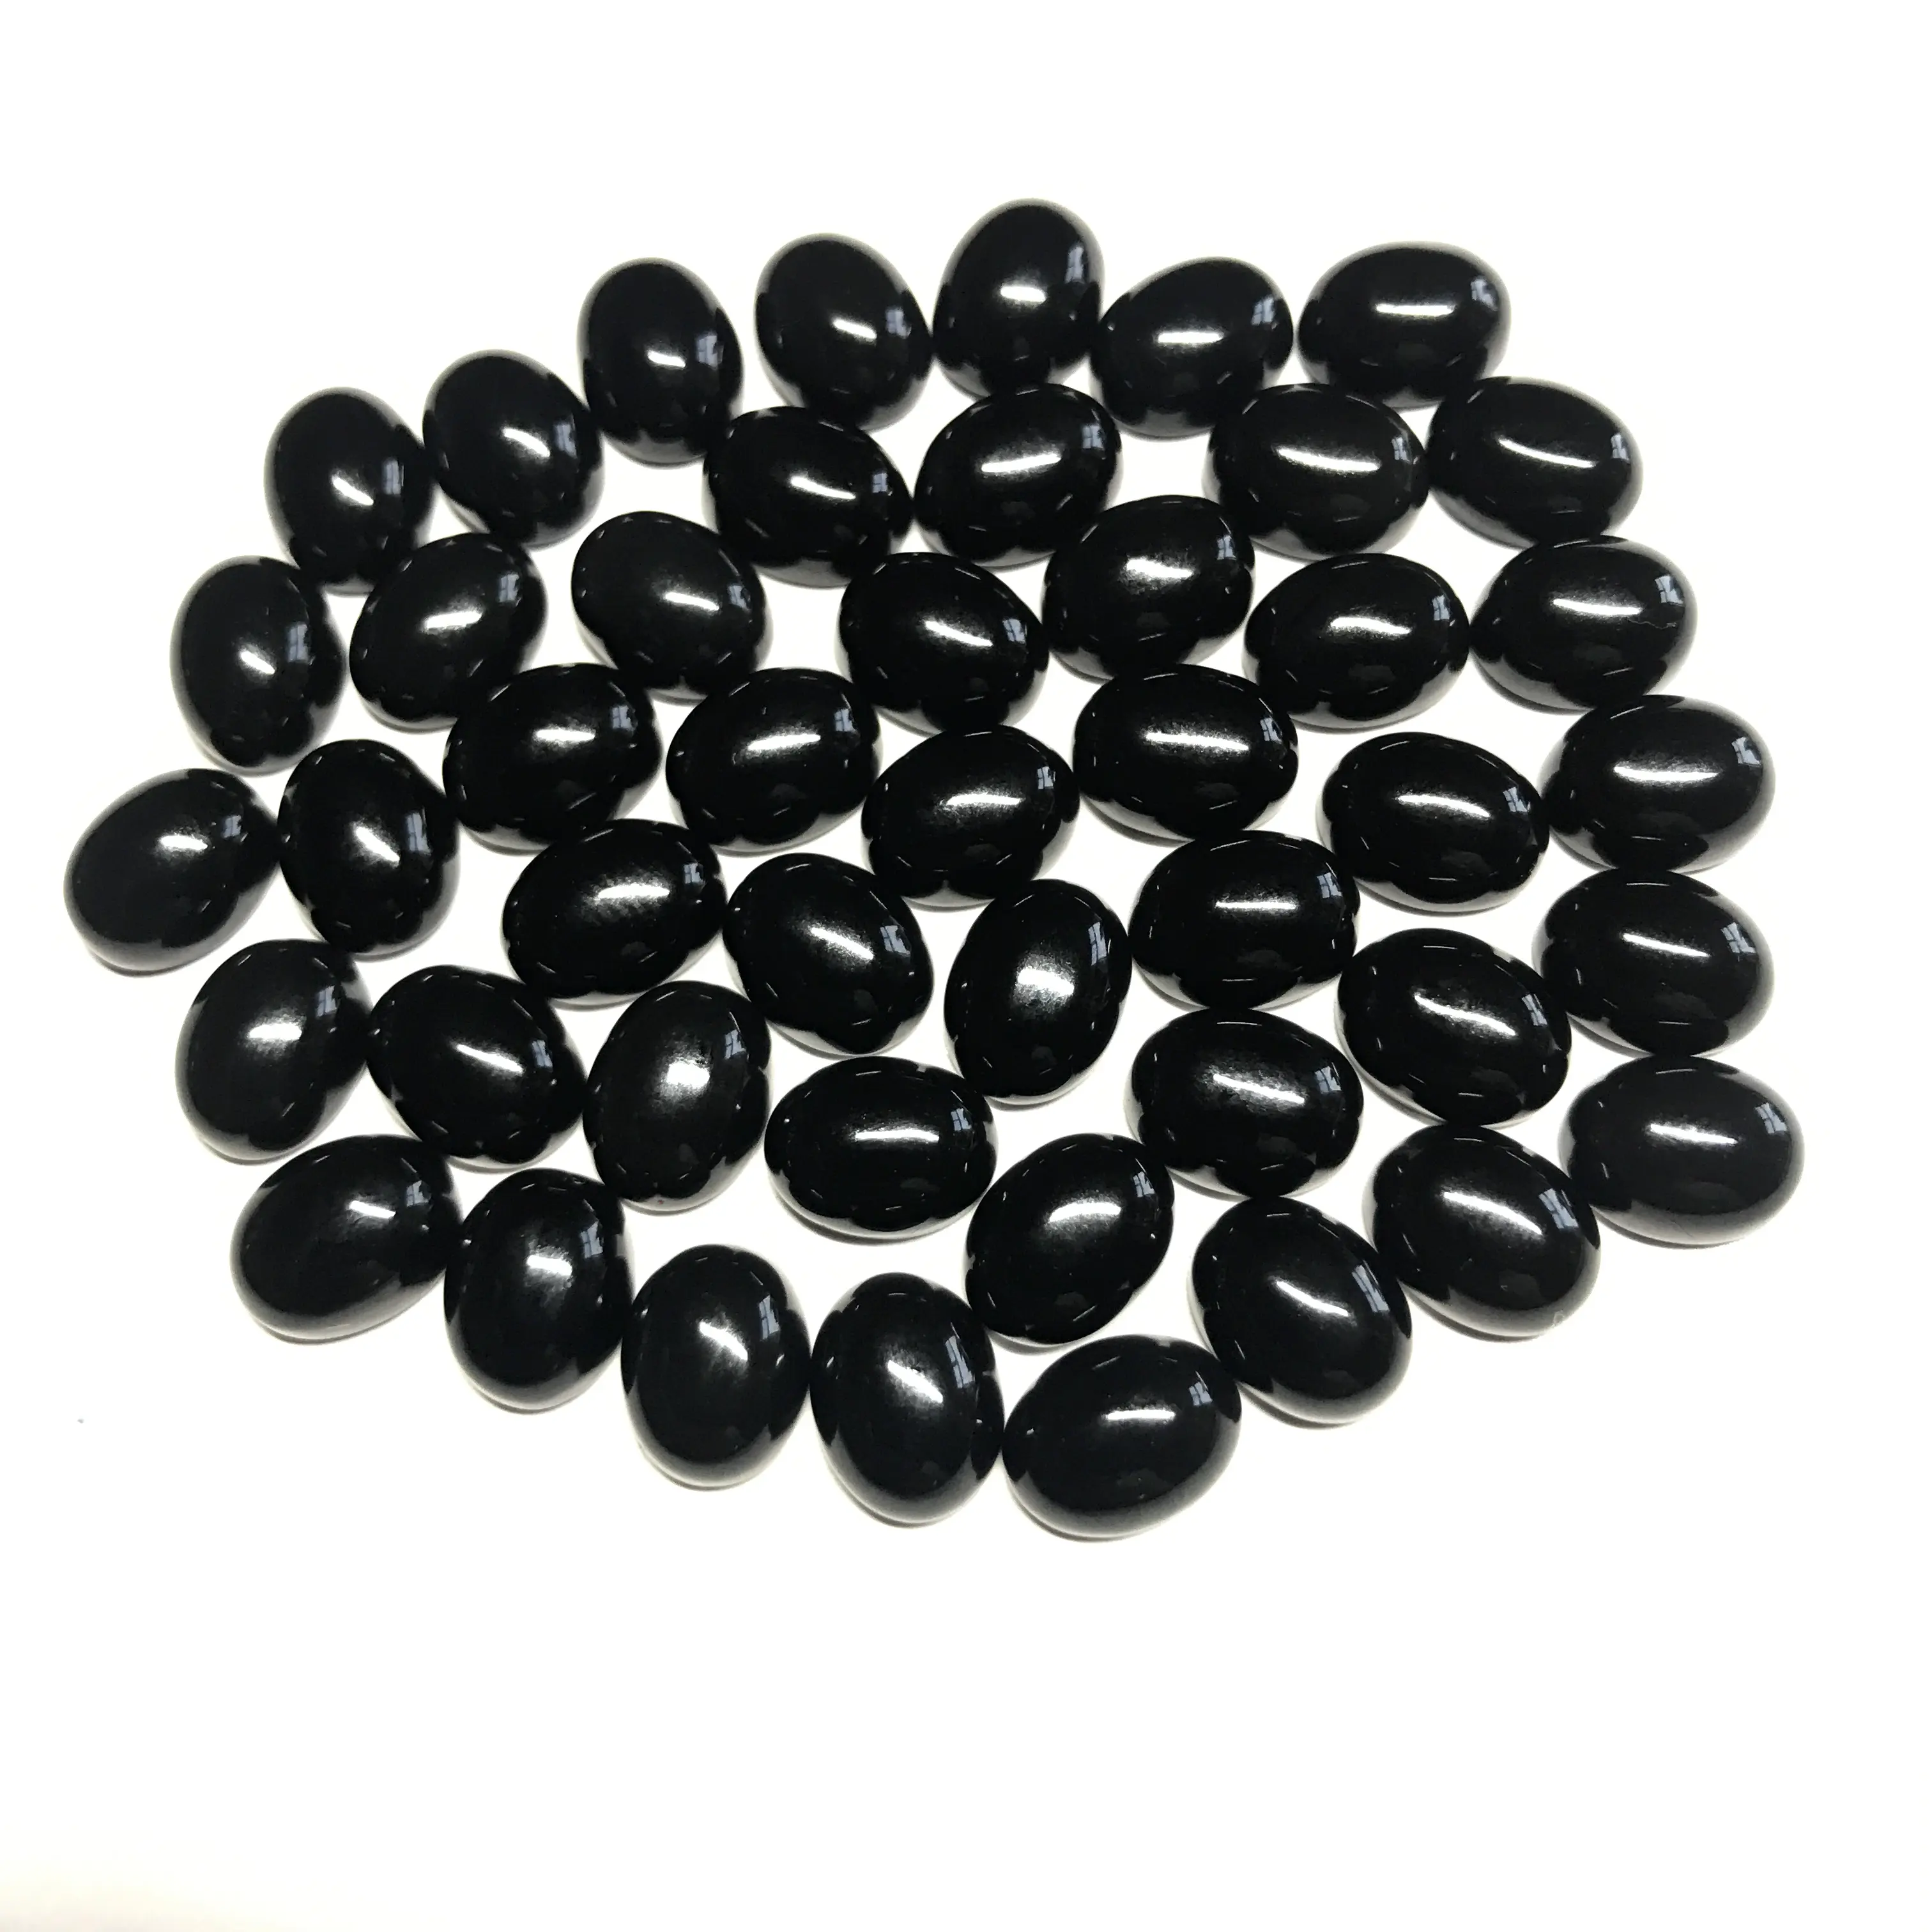 7x9mm प्राकृतिक काले गोमेद ढीला ओवल Cabochon रत्न थोक मूल्य प्राकृतिक एएए शीर्ष गुणवत्ता रत्न प्राकृतिक अच्छी रंग पत्थर